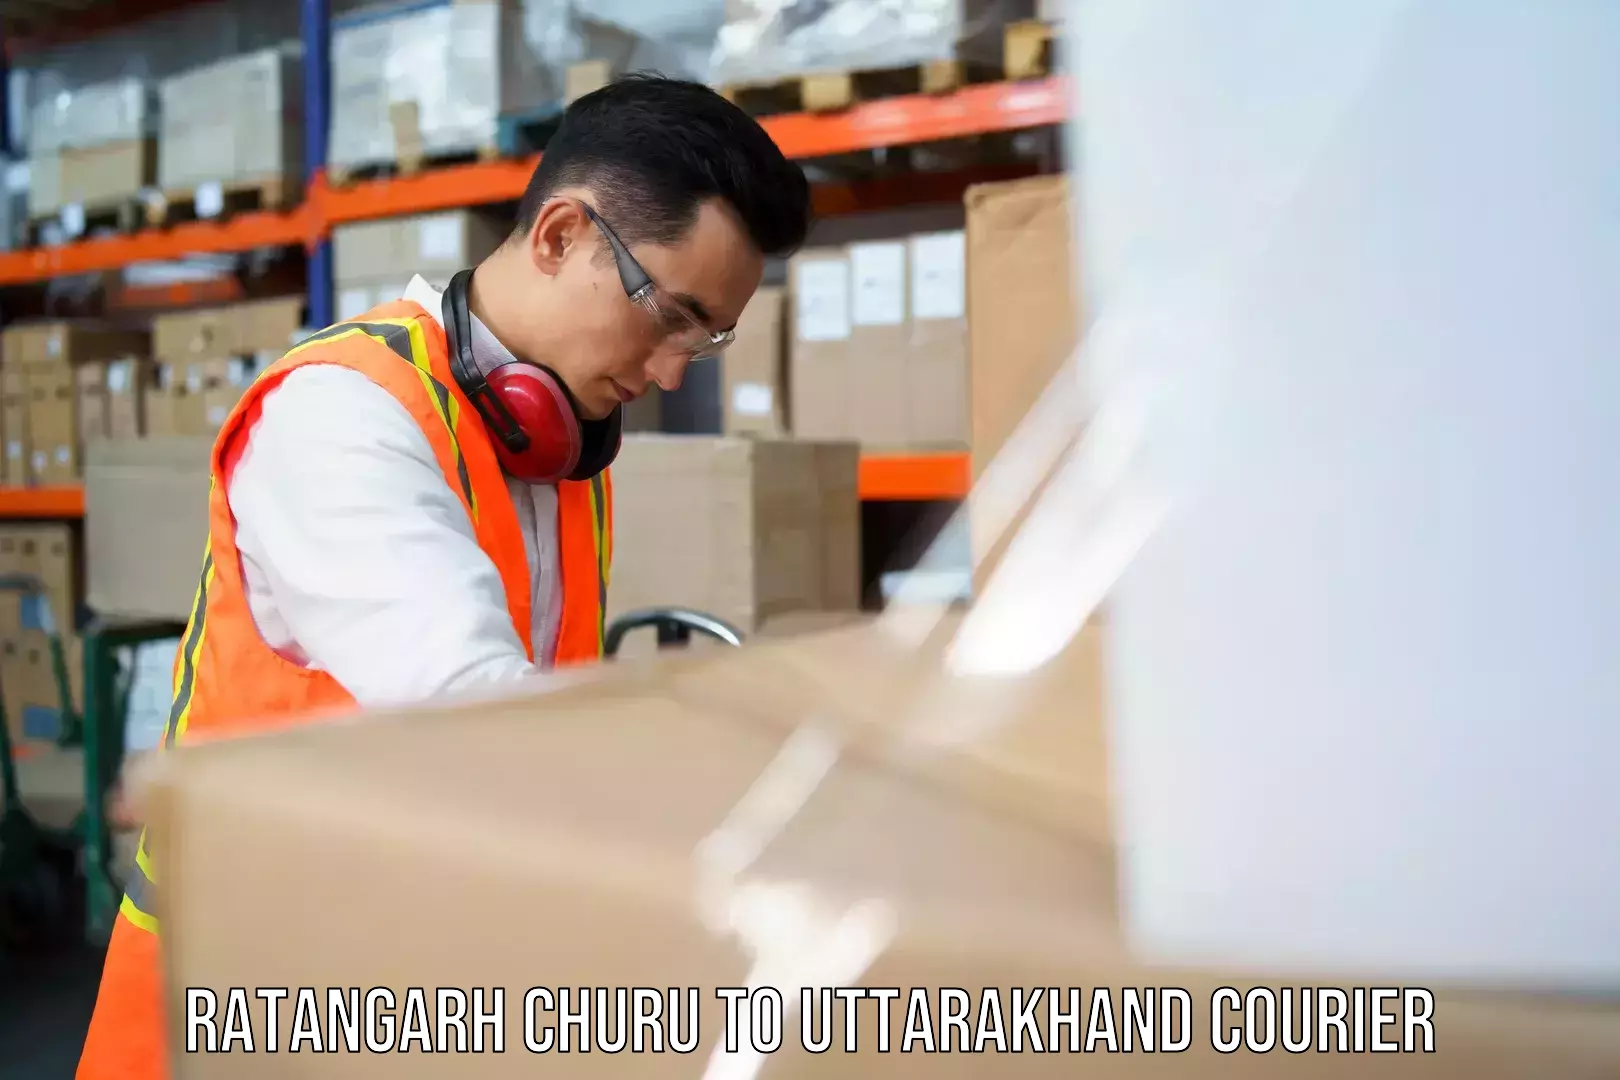 Global shipping networks Ratangarh Churu to Karnaprayag